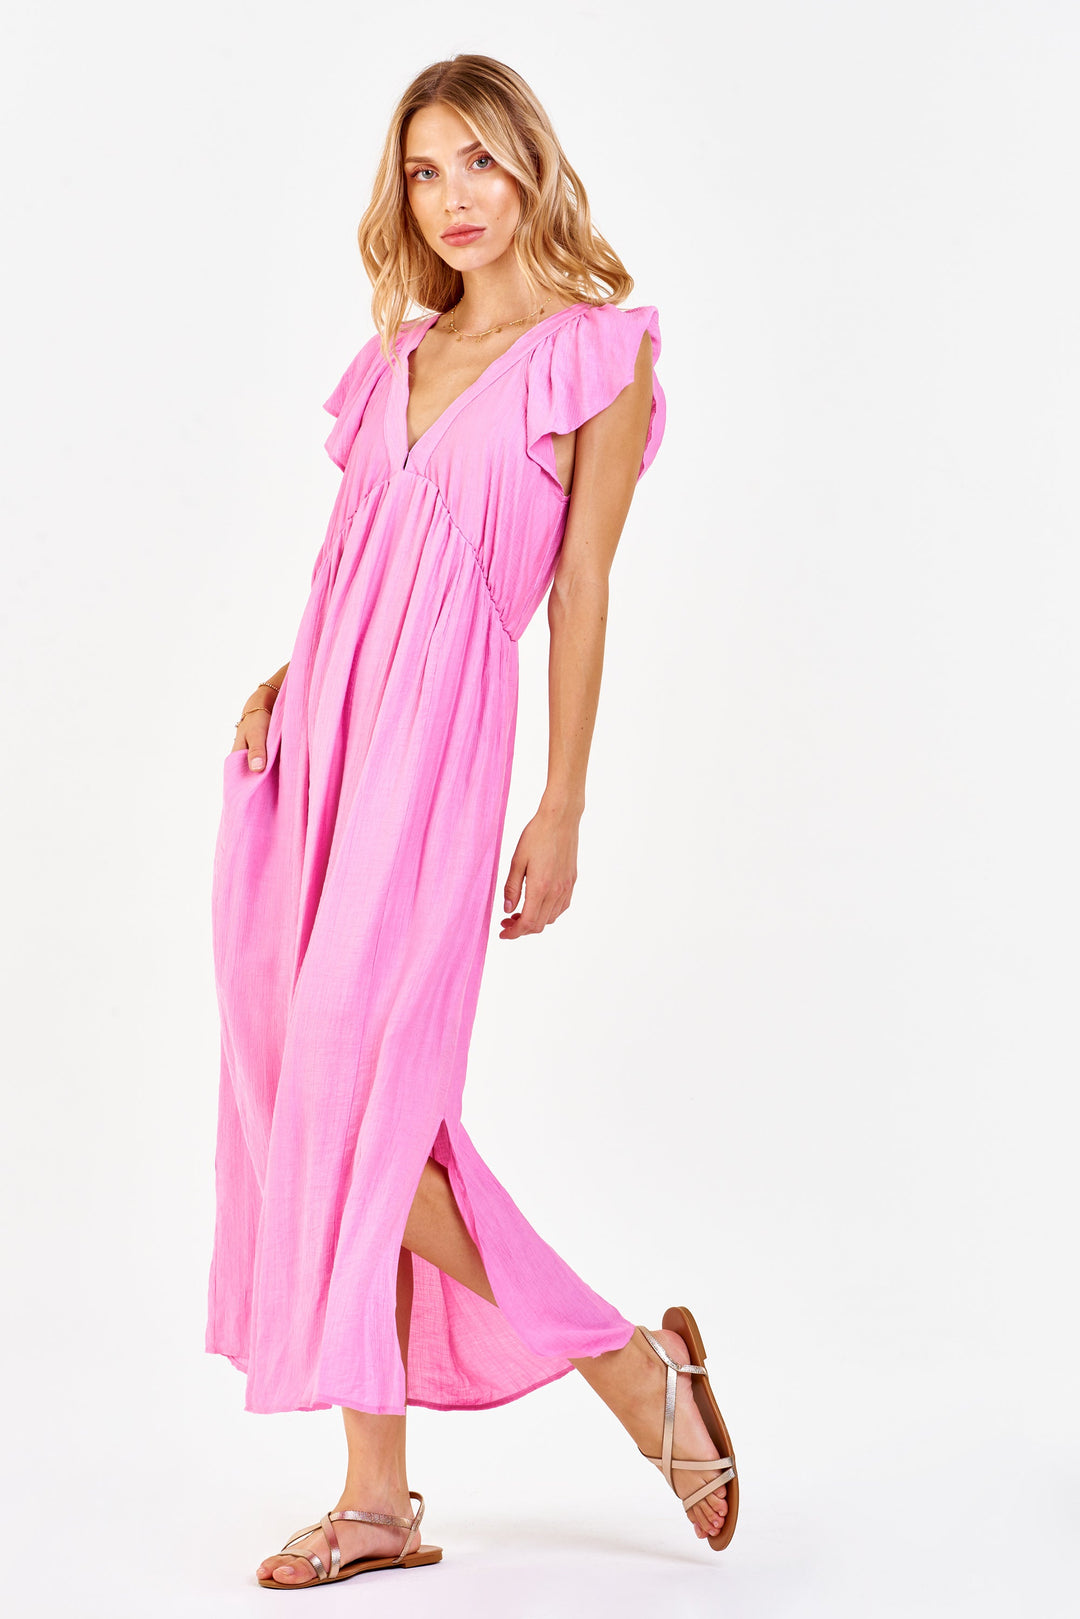 image of a female model wearing a LOTTIE DEEP V DRESS FANCY PINK DRESSES